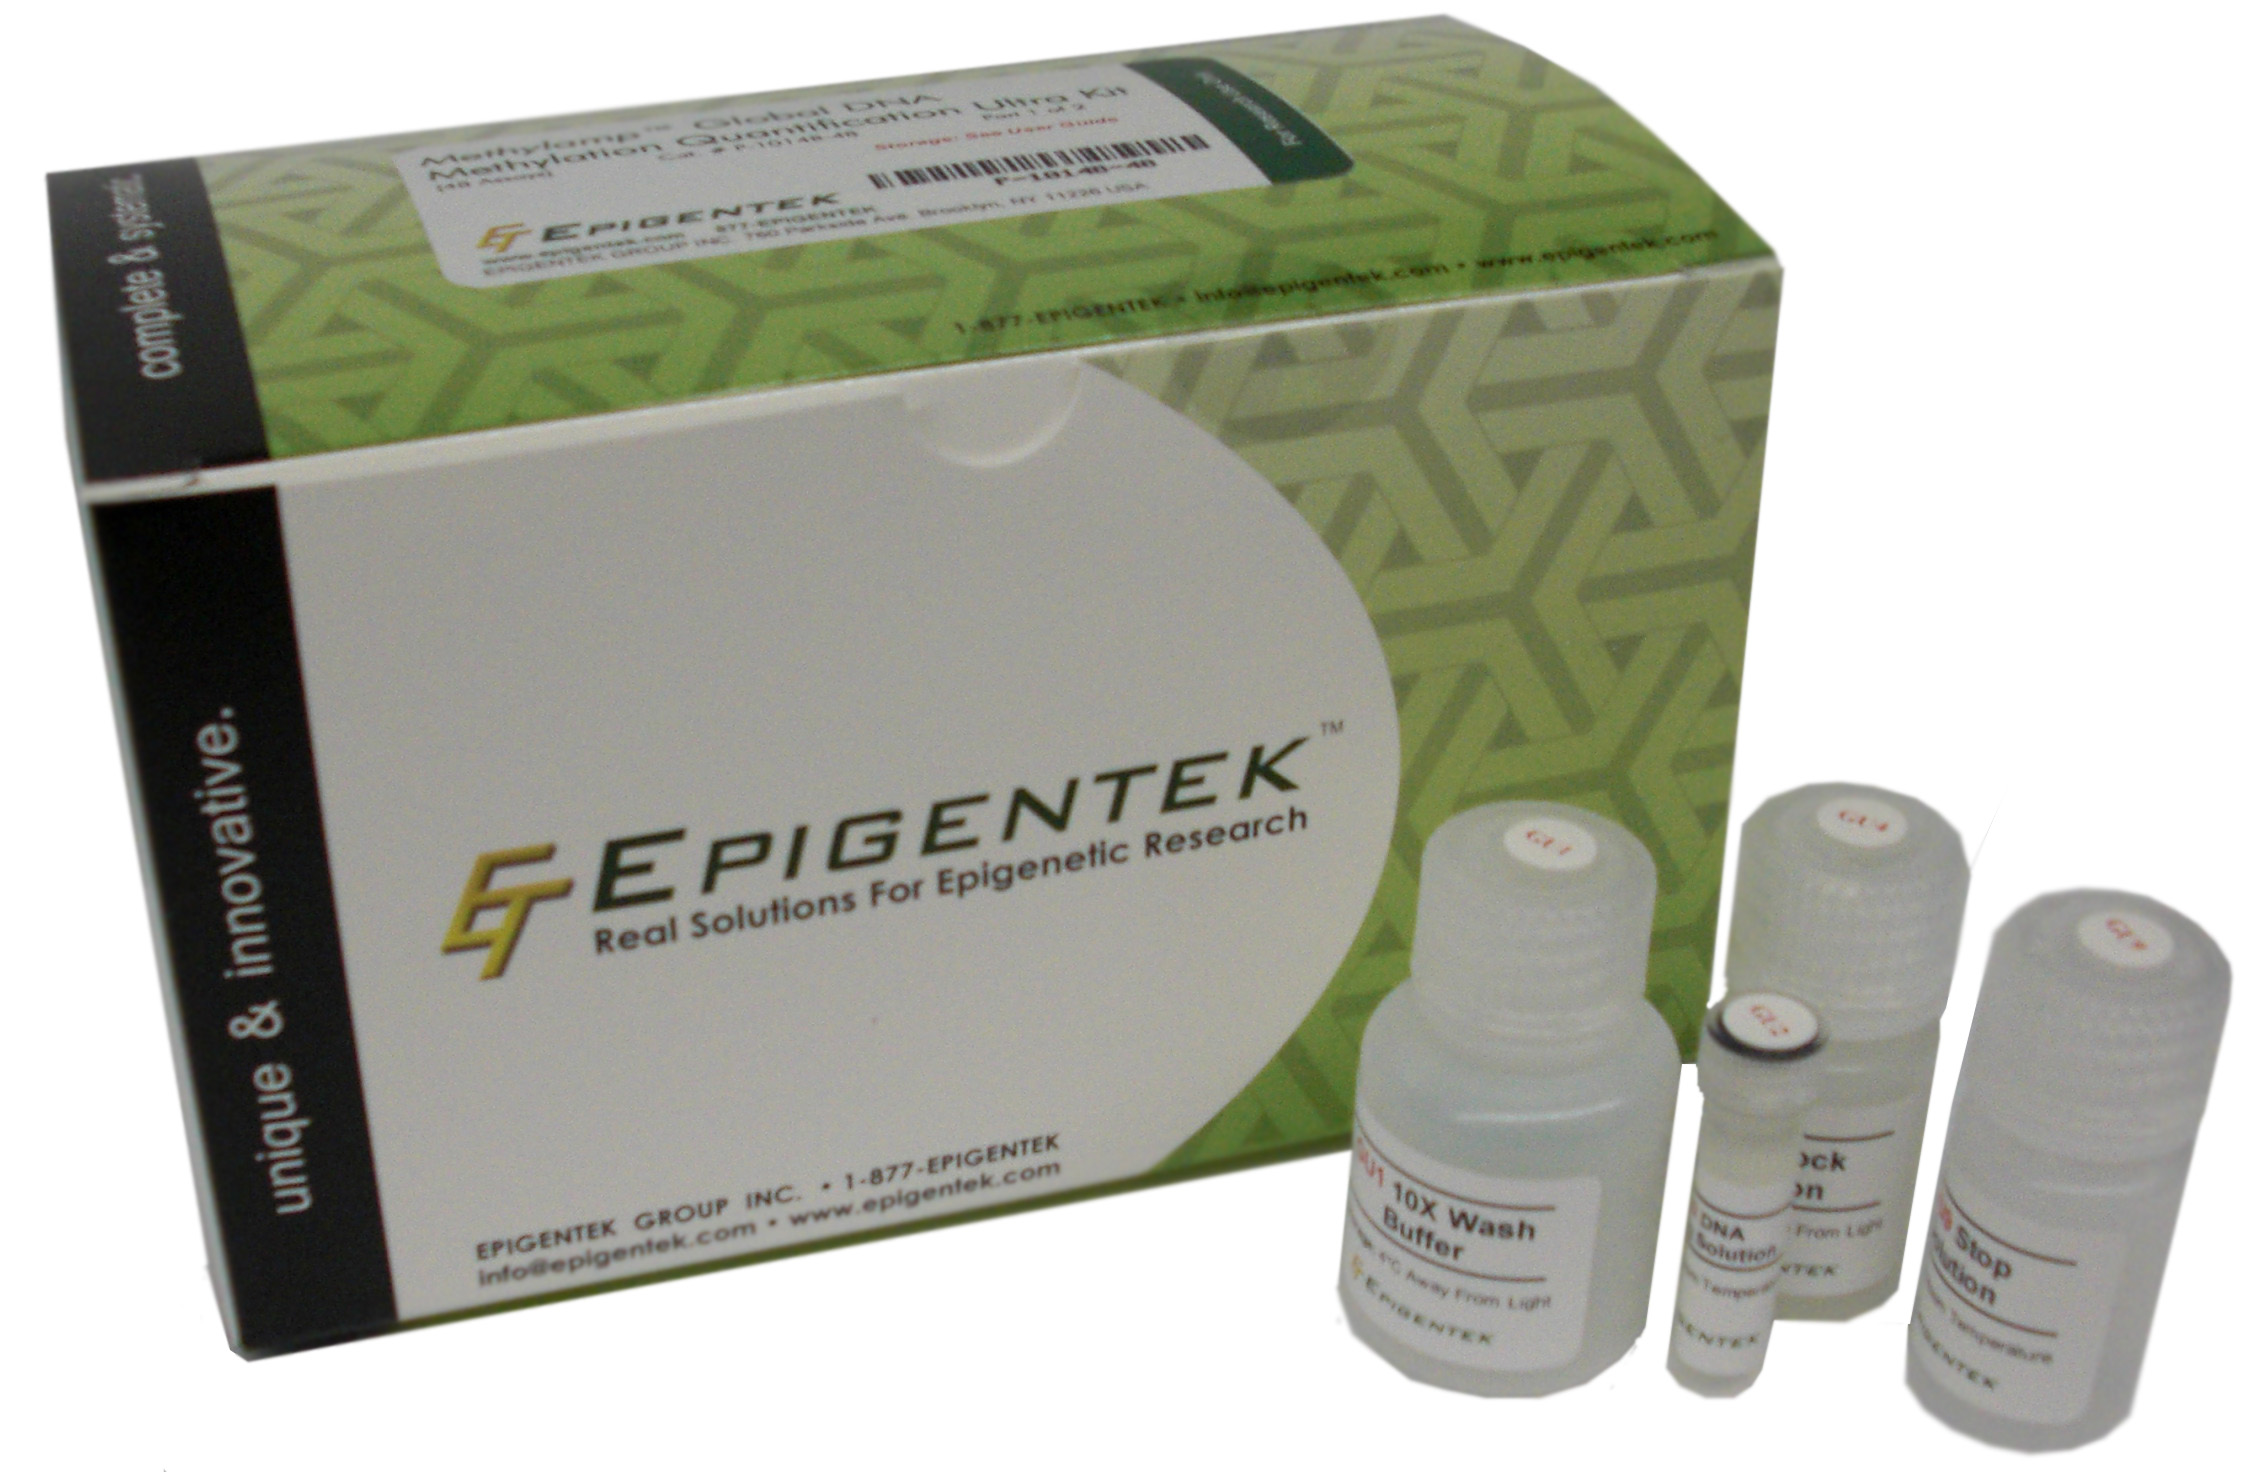 Epigentek组蛋白检测分析试剂盒全线75折促销